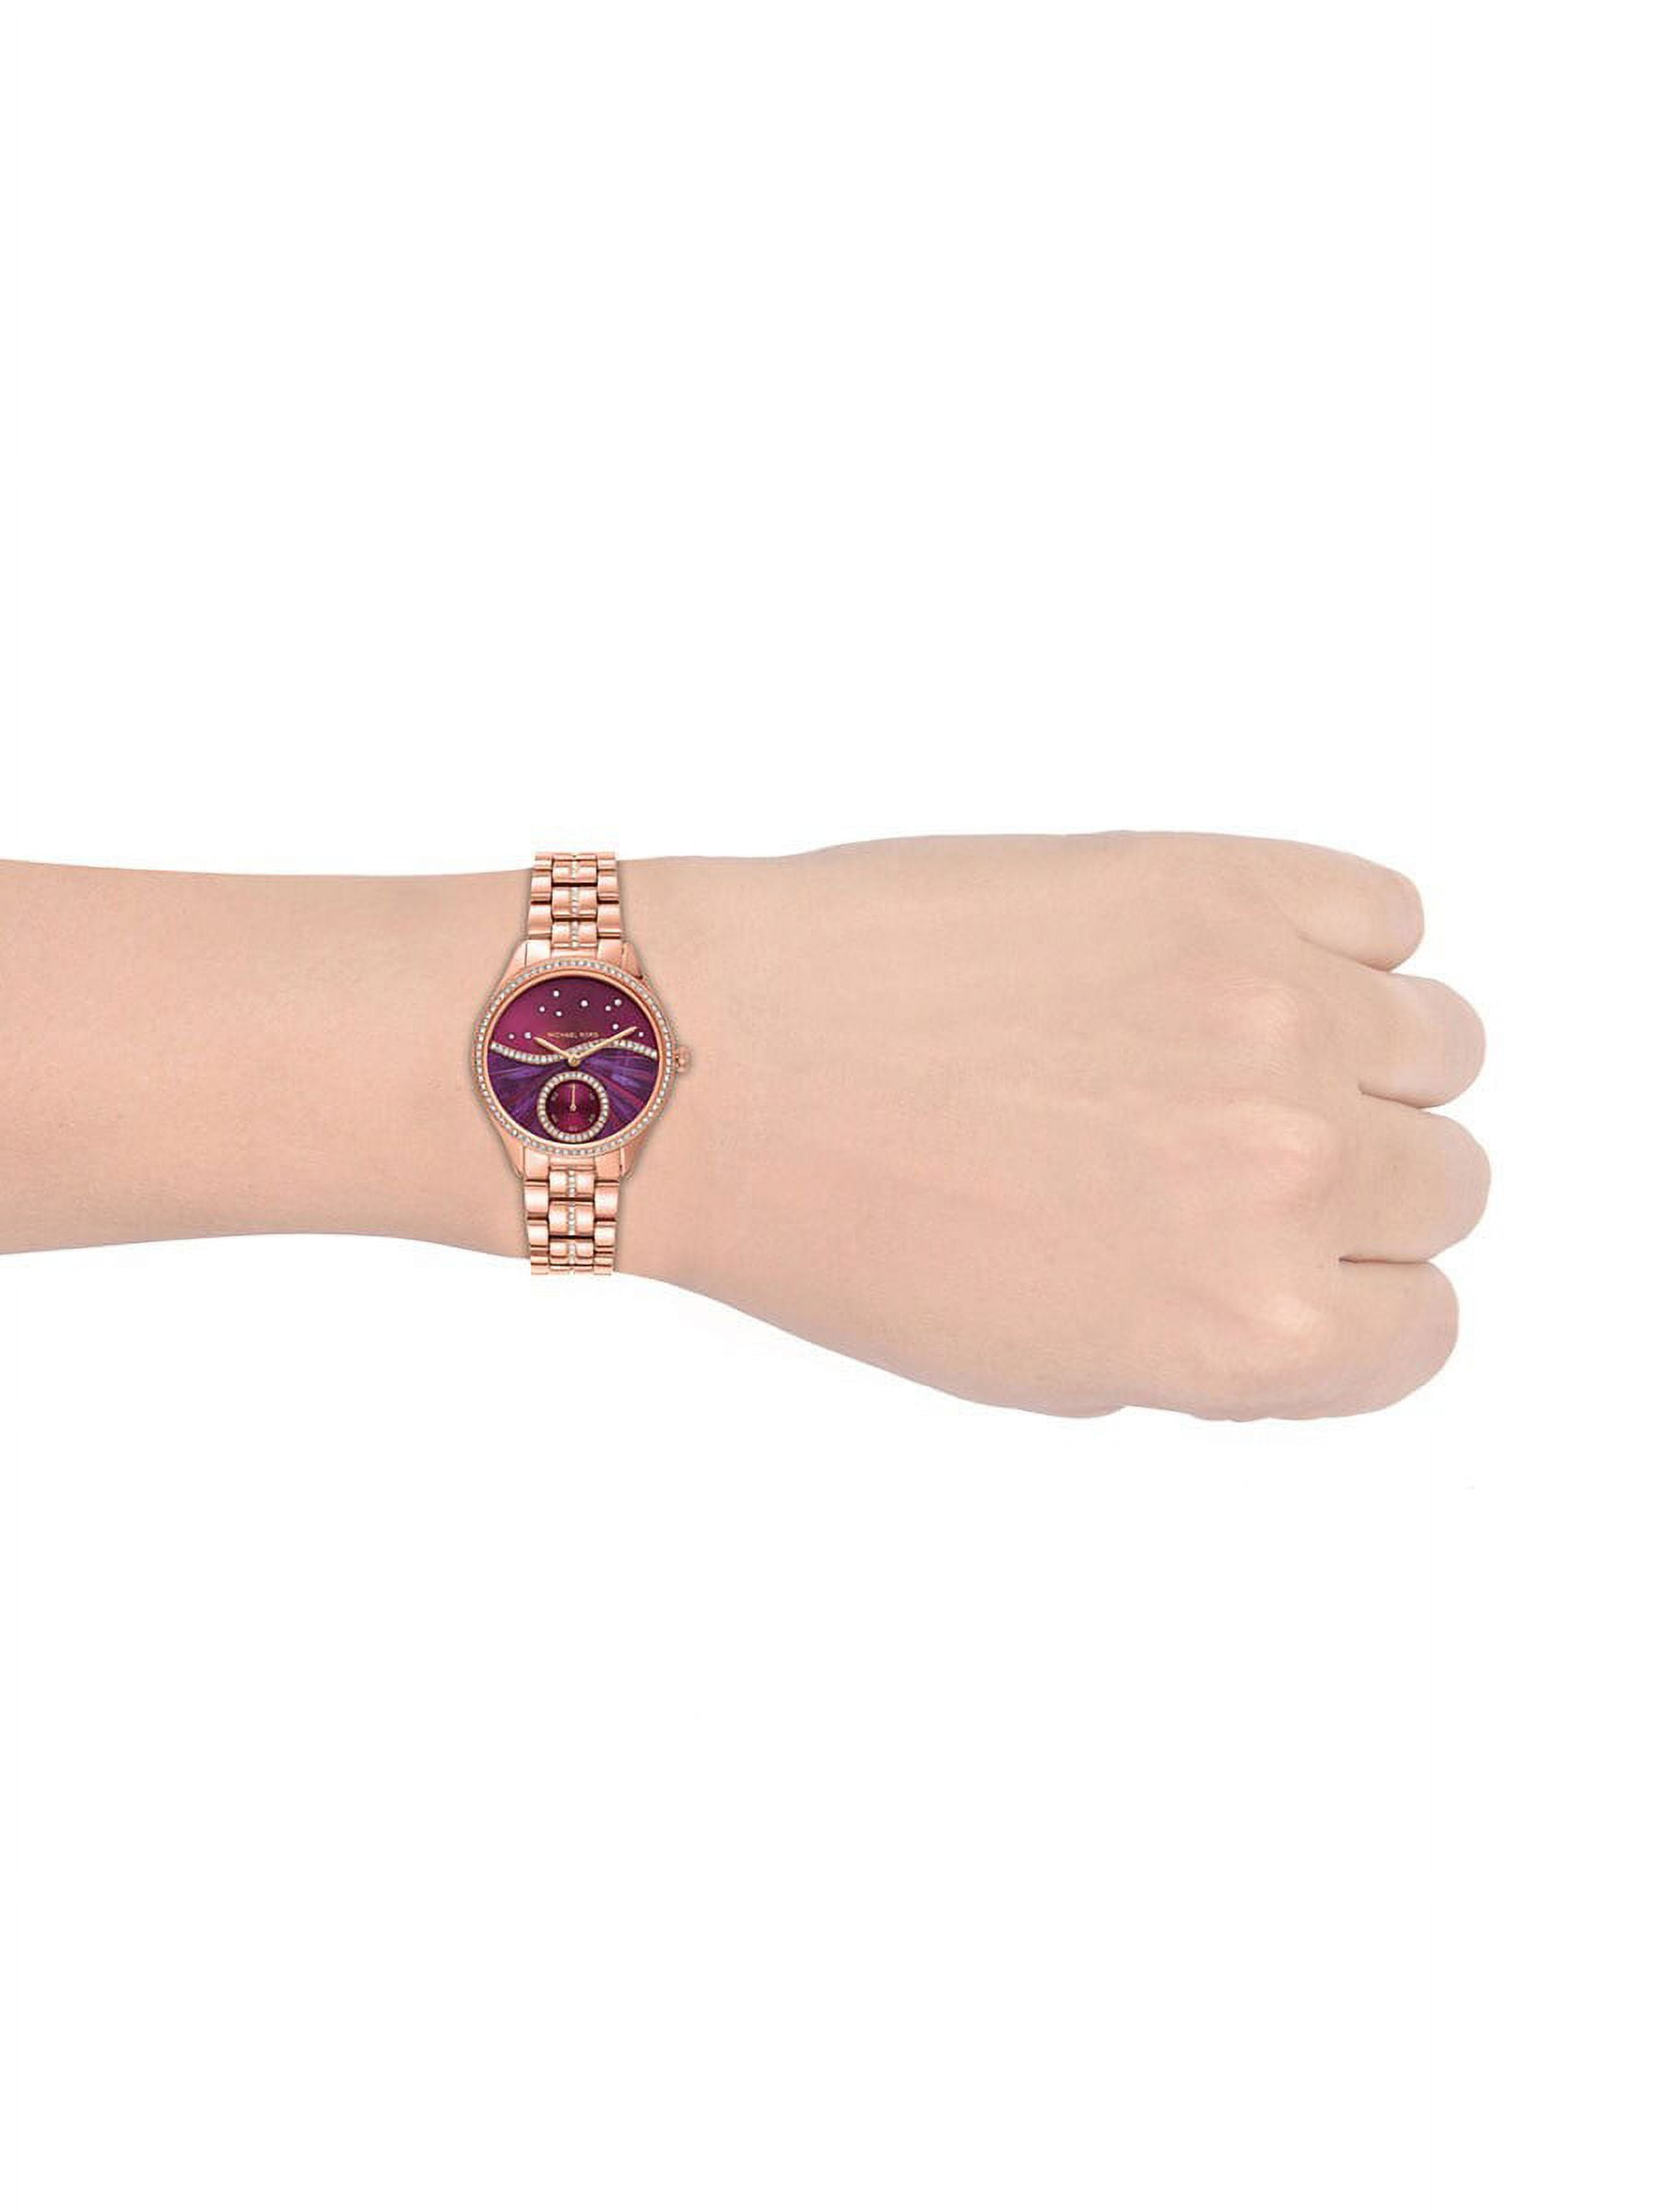 Michael Kors Women\'s Lauryn Purple Dial Watch - MK4437